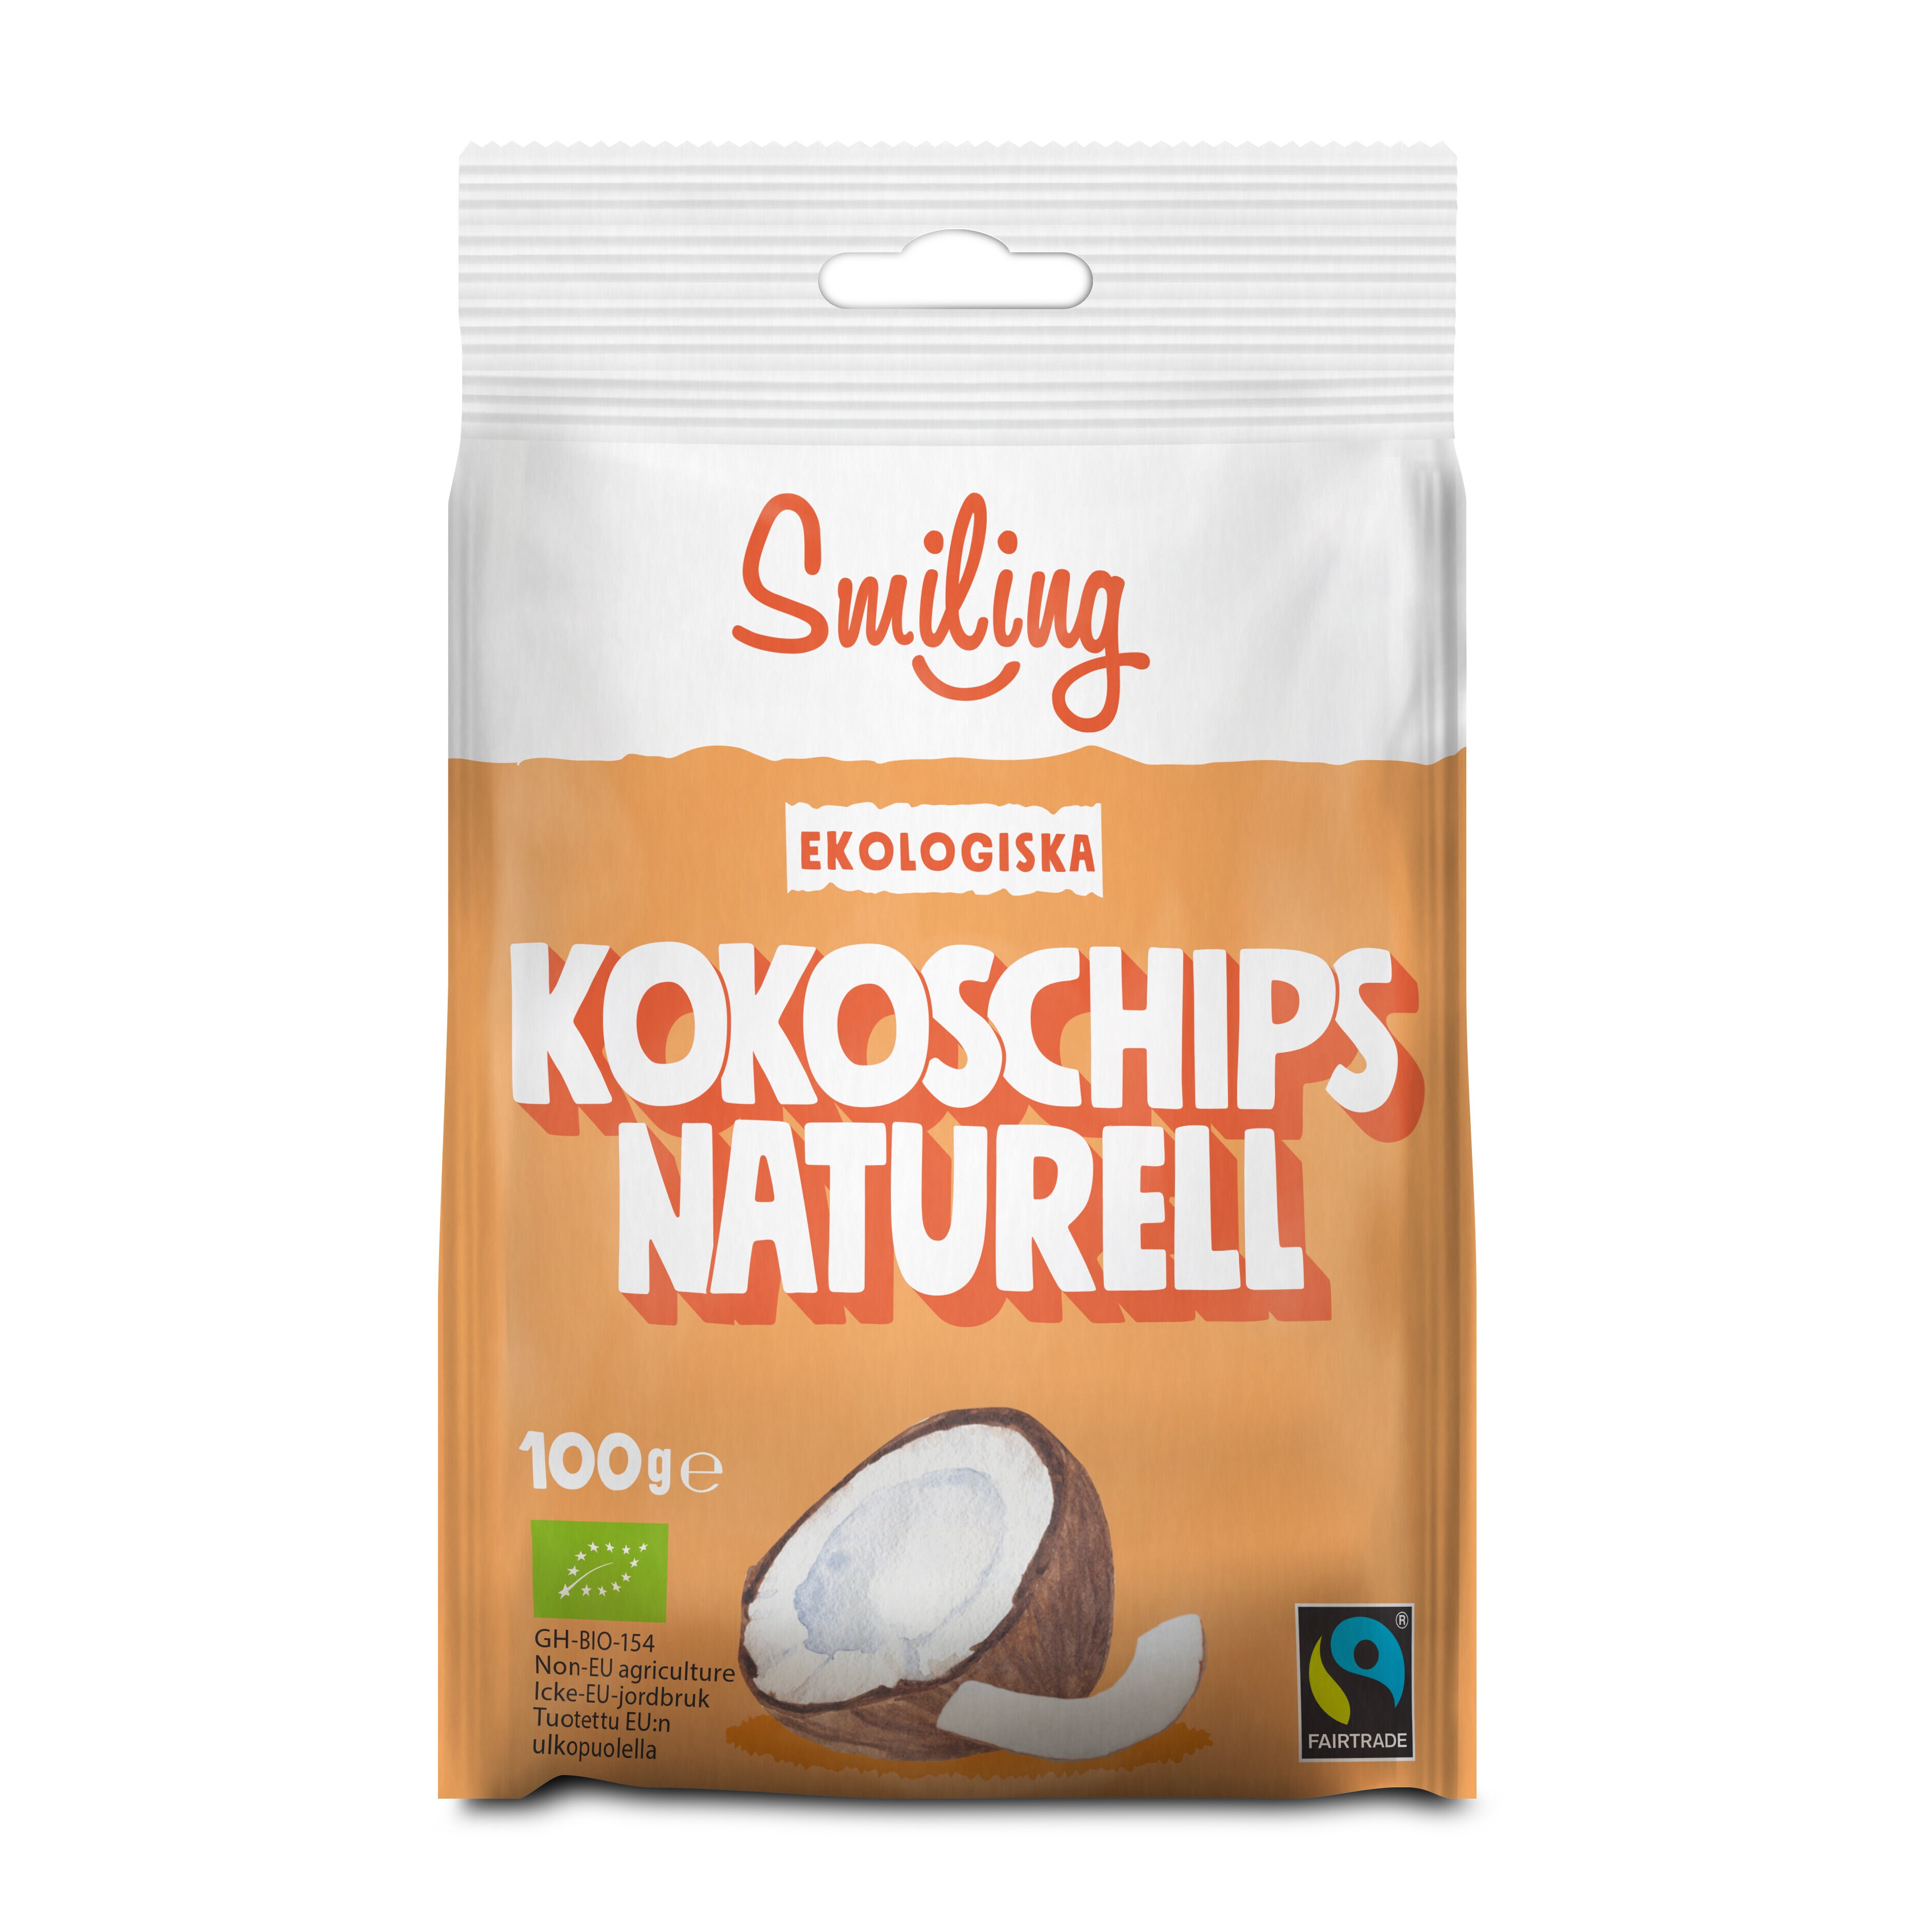 Kokoschips Naturell 100g 